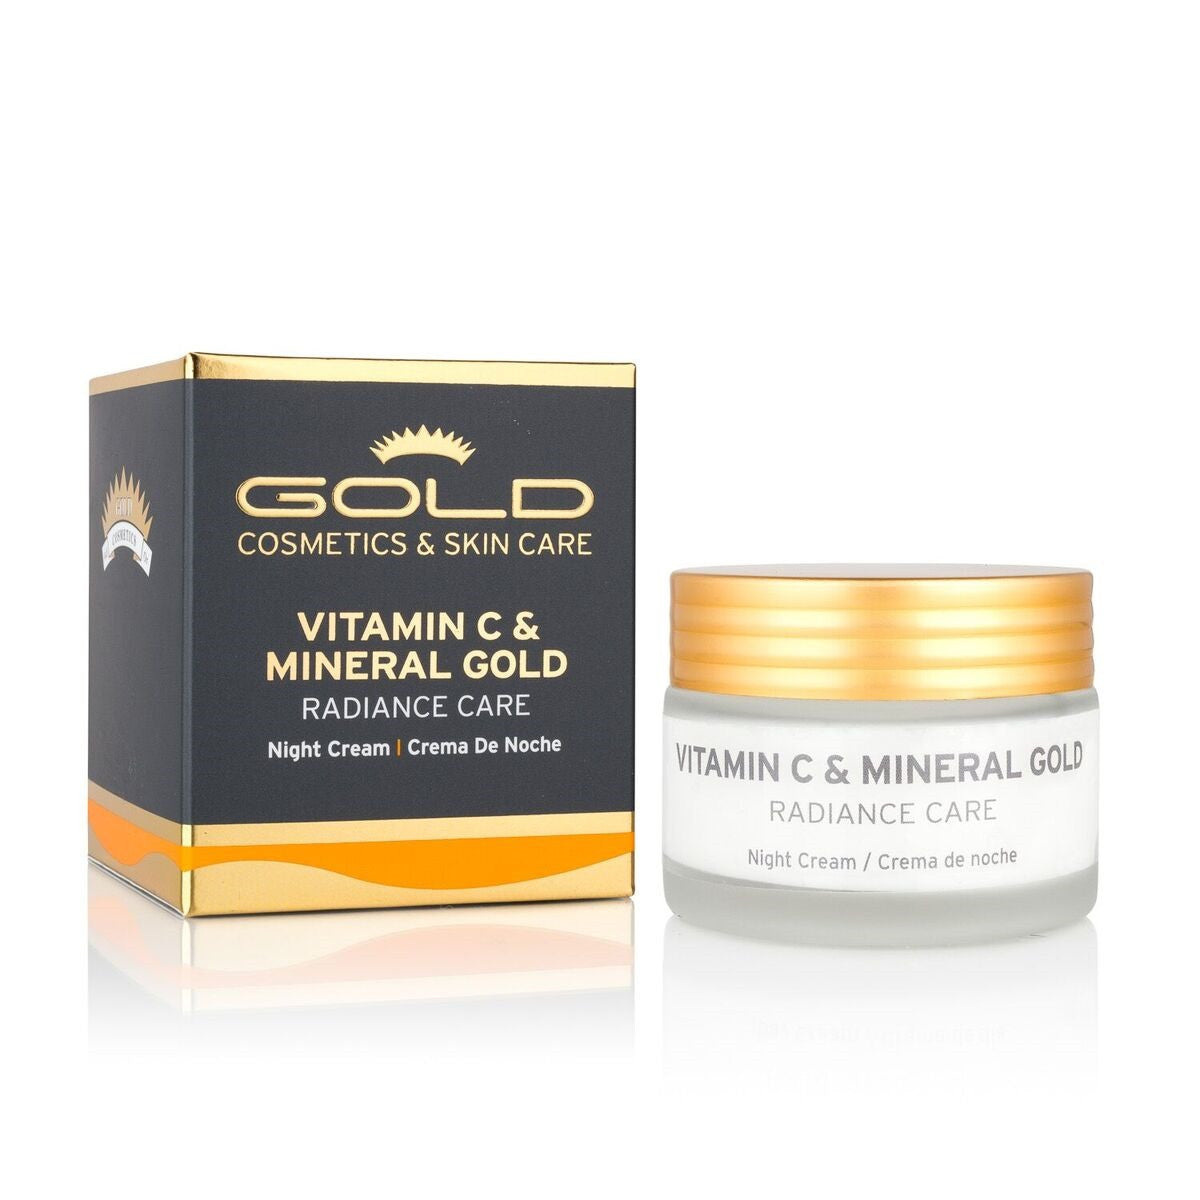 VITAMIN C & MINERAL GOLD NIGHT CREAM - Gold Cosmetics & Skin Care